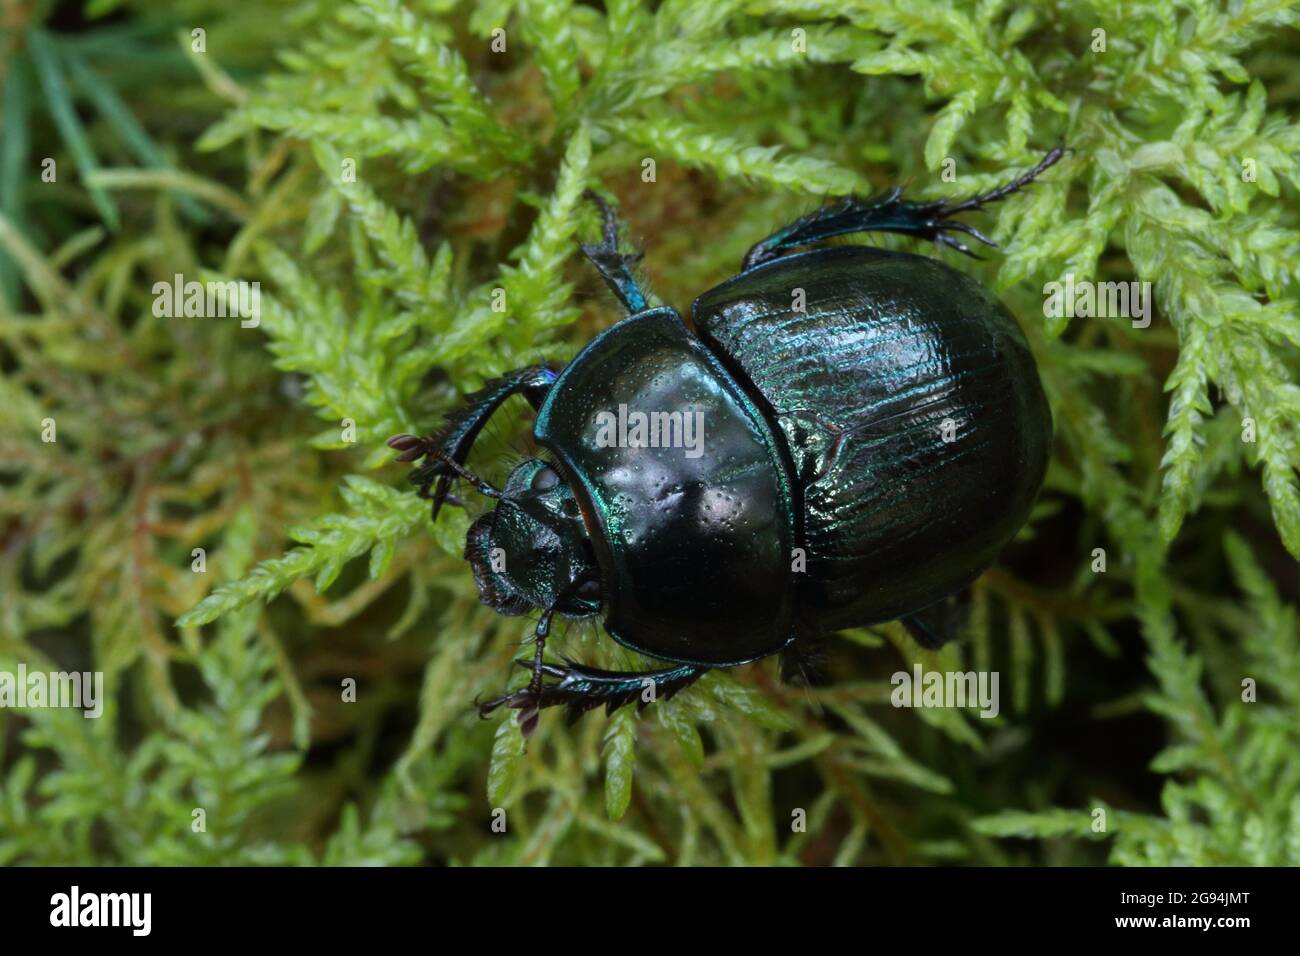 Primer plano de un Beetle de Dor Woodland, Anoplotrpes stercorosus con una concha brillante caminando sobre un terreno de musgo en el bosque. Foto de stock